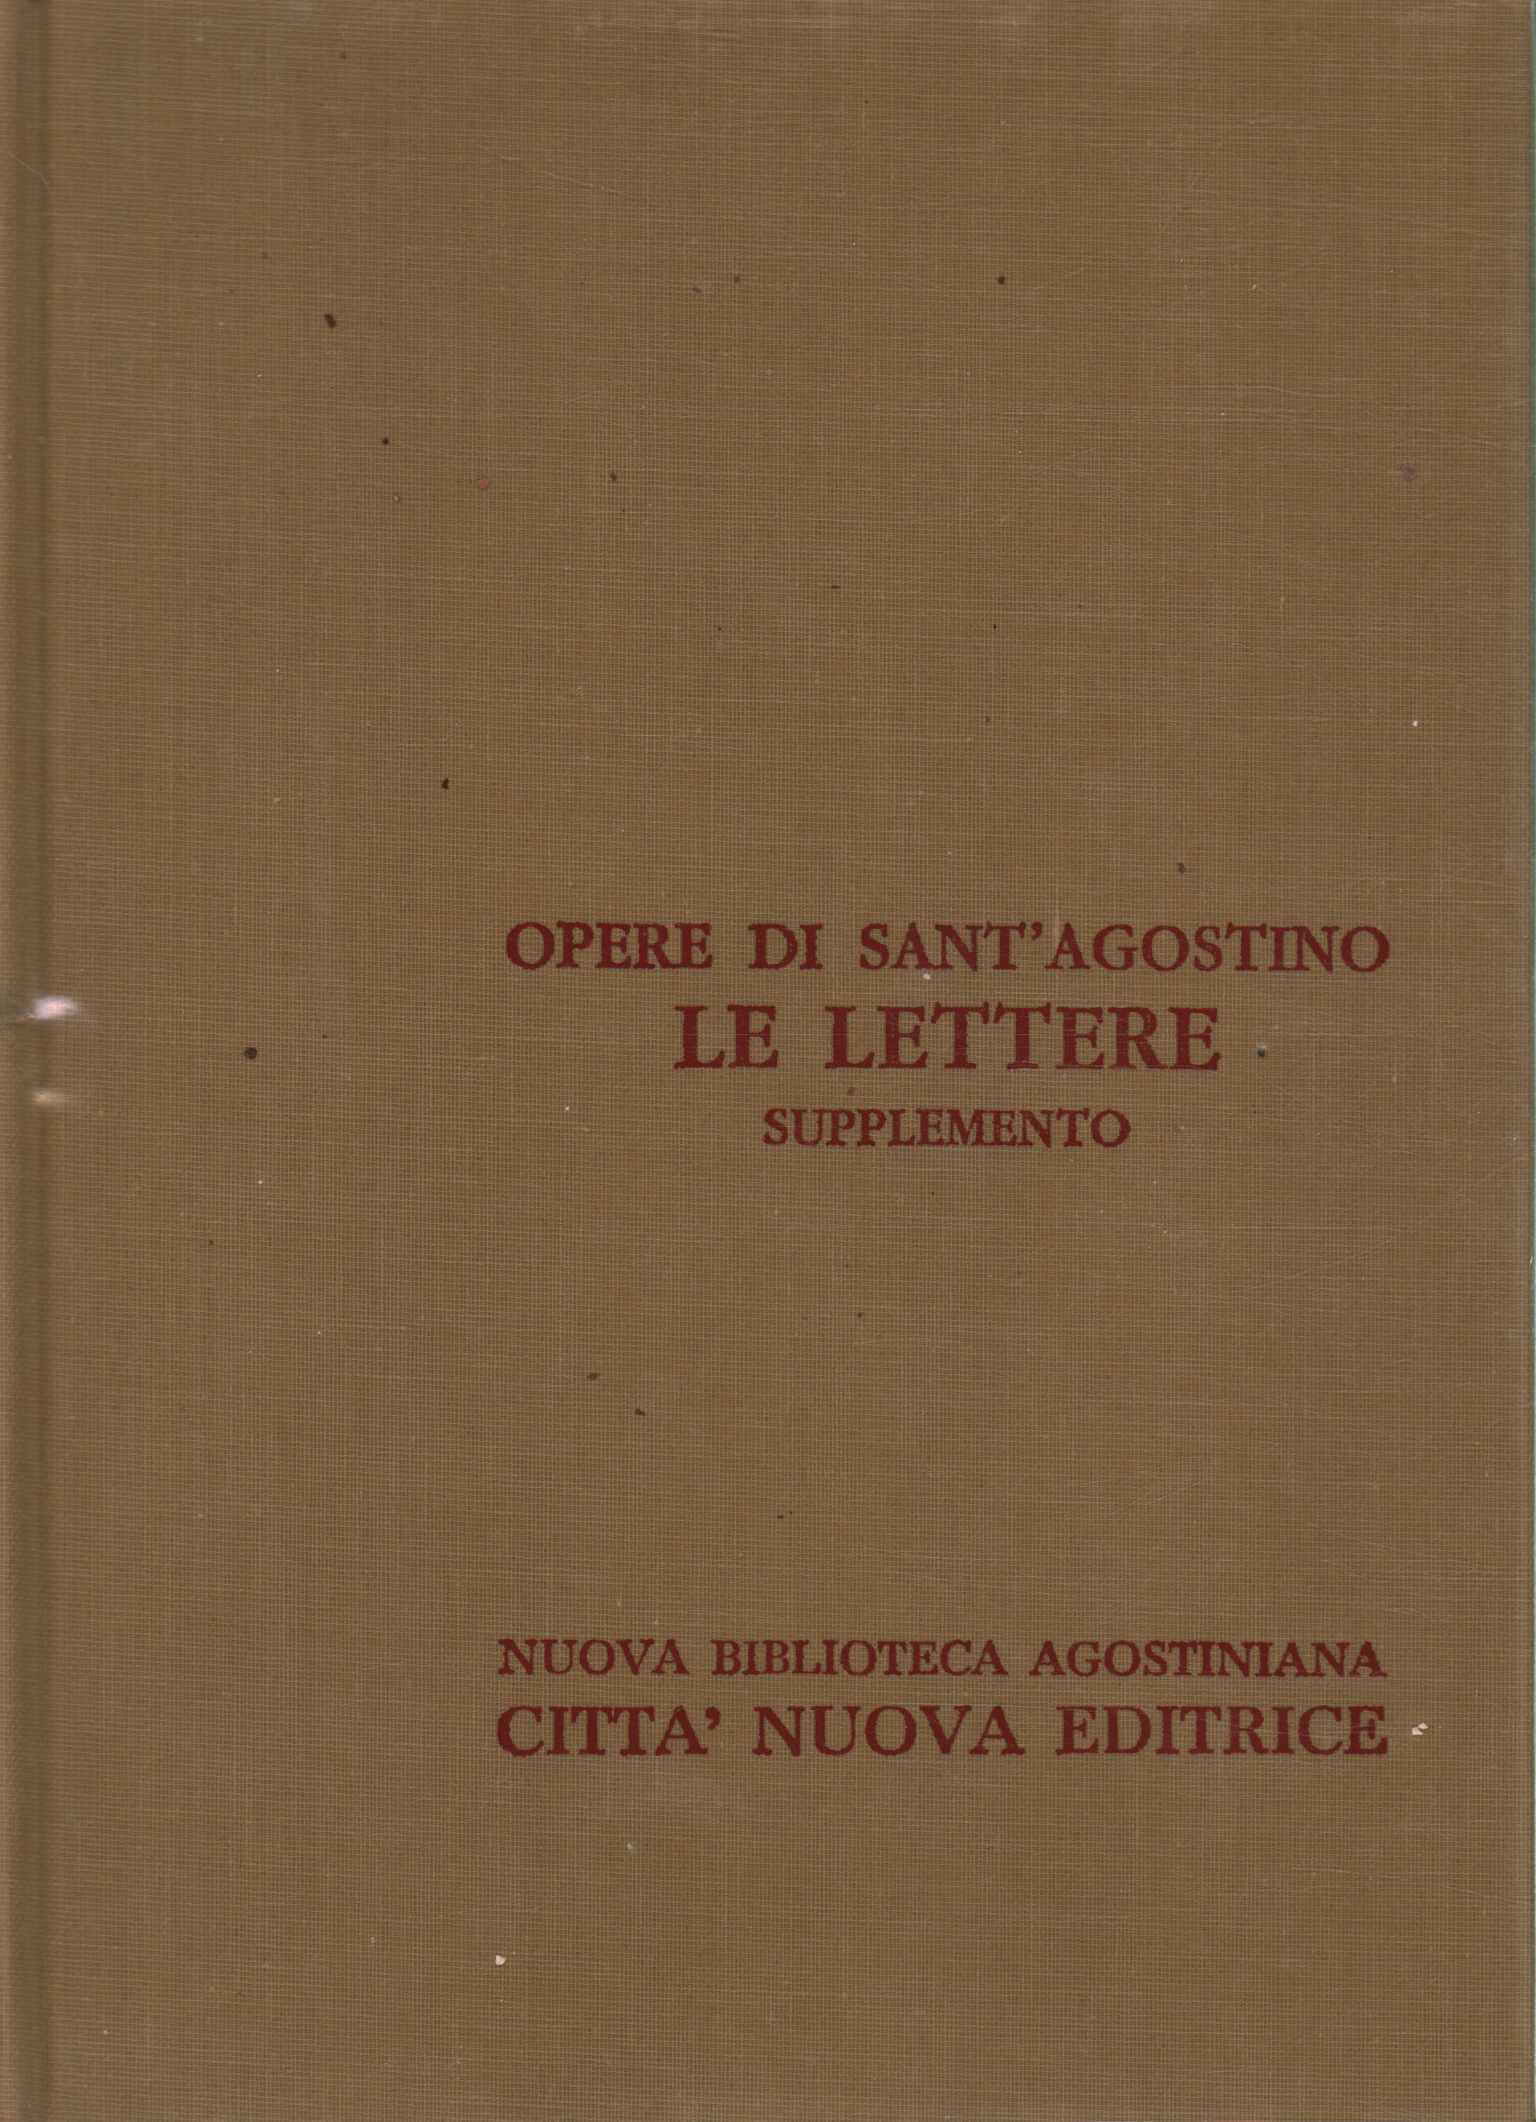 Opere di Sant'Agostino XXIII/A.%2,Opere di Sant'Agostino XXIII/A.%2